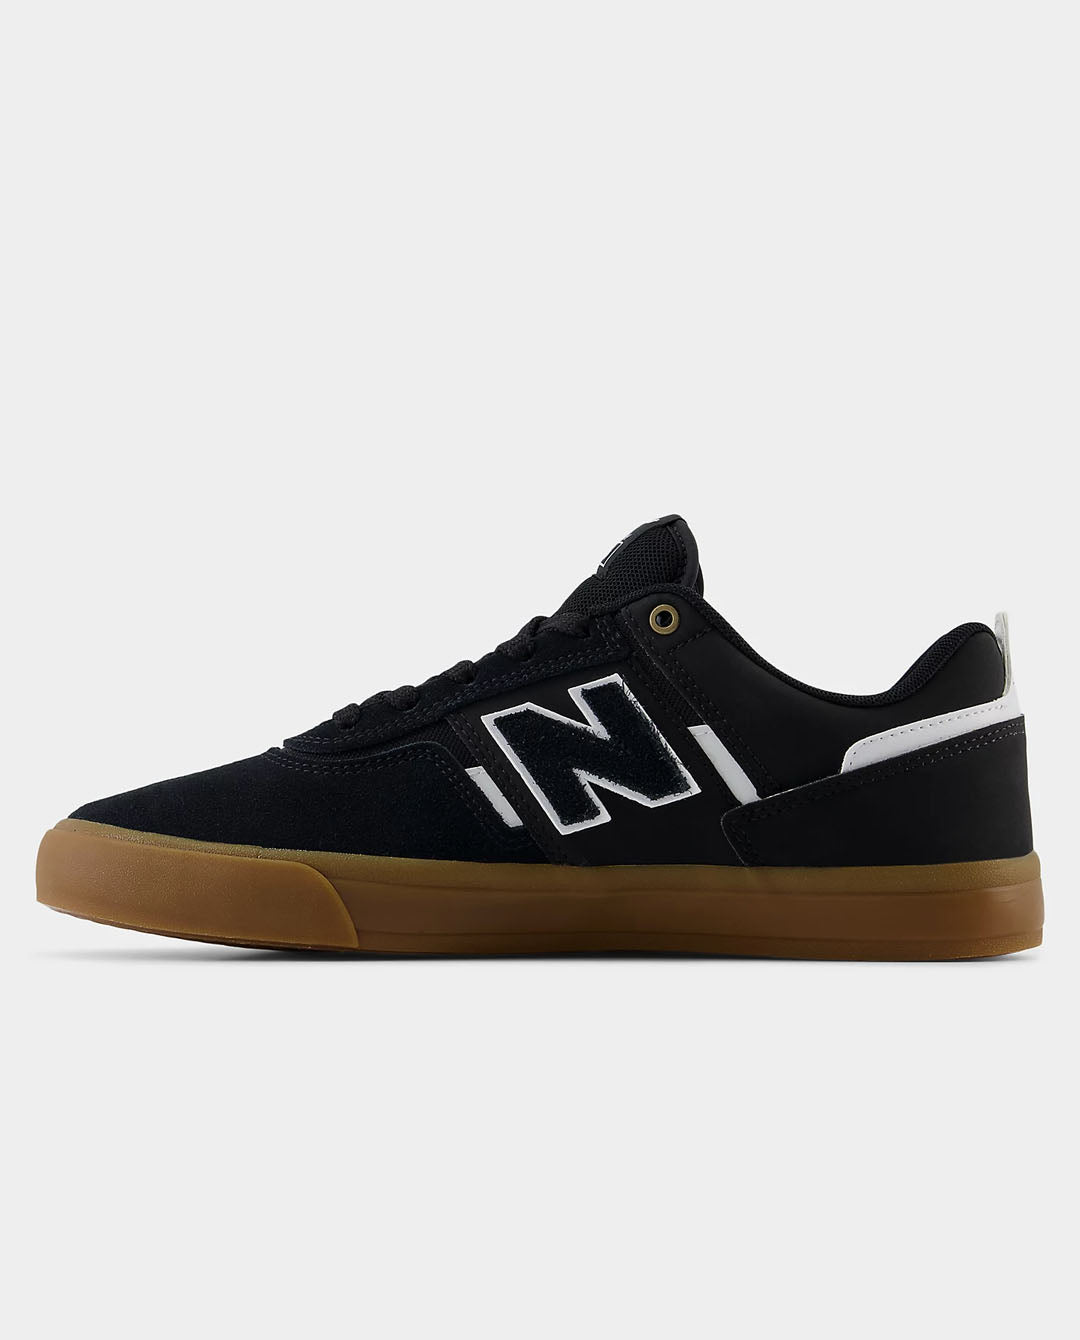 New Balance - Jamie Foy NM306ZUC Shoe - Black